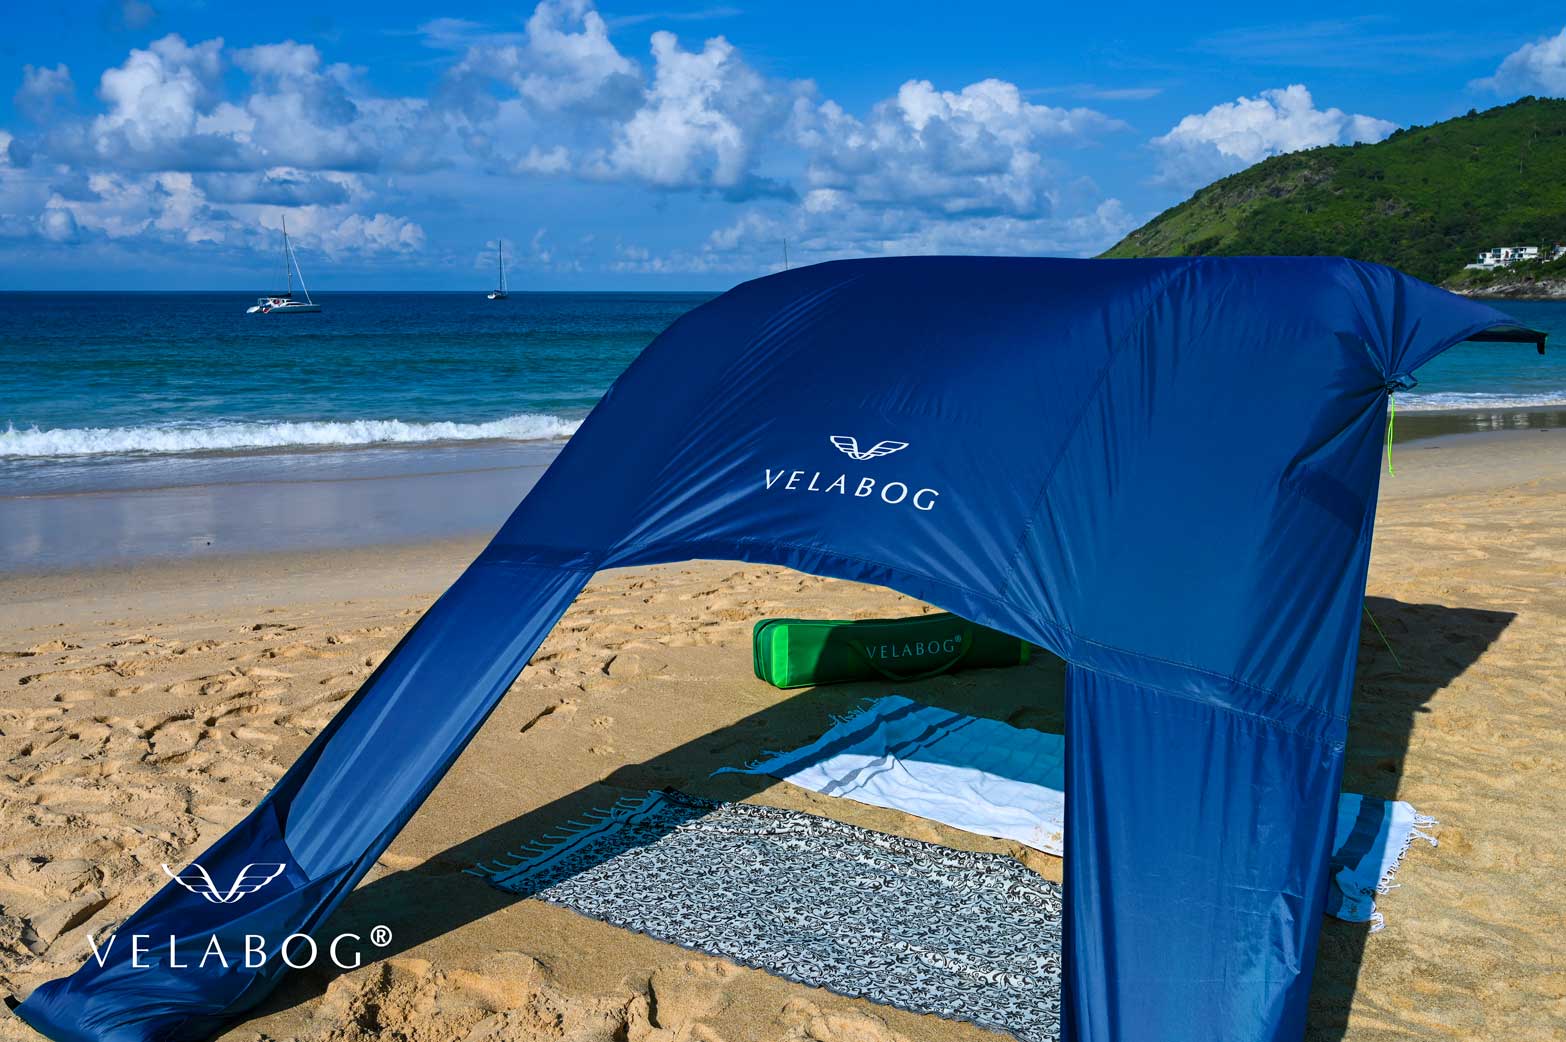 Toldo playa Velabog Breeze azul nocturno. La mejor refugio y protección solar de alta calidad en la playa. Opción de montaje desde viento ligero a fuerte. Excelente resistencia al viento en comparación con sombrillas y carpas de playa. Vista desde atrás, detalles.